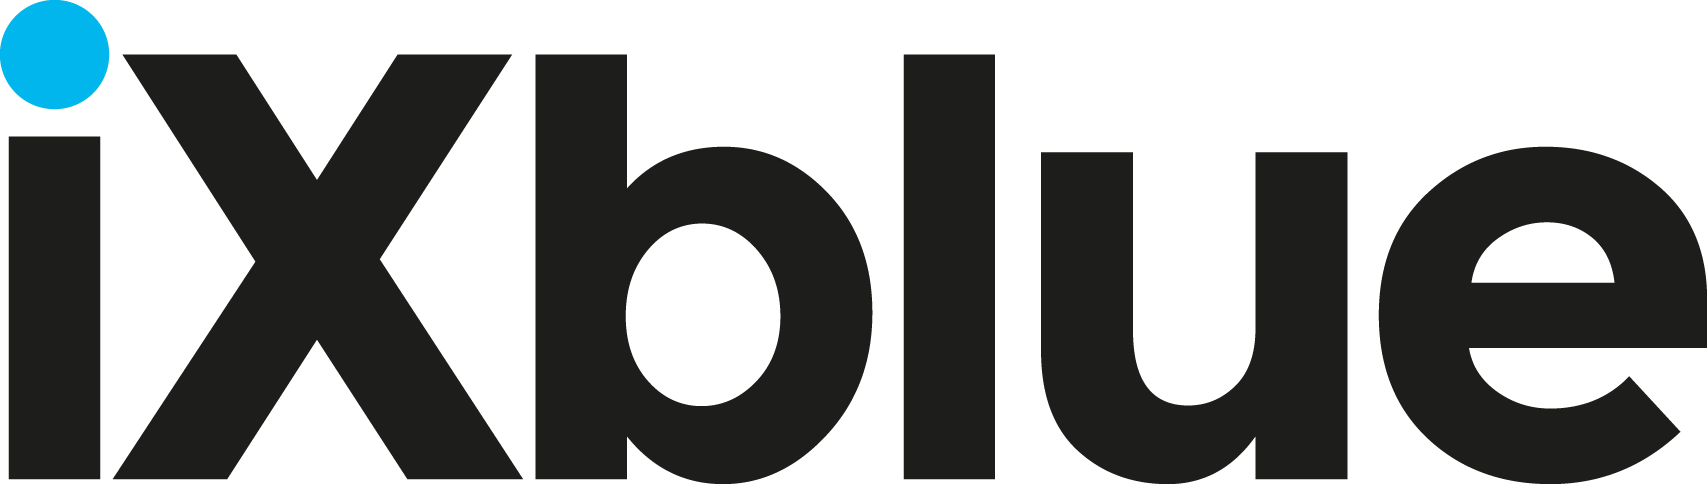 Ixblue-logo